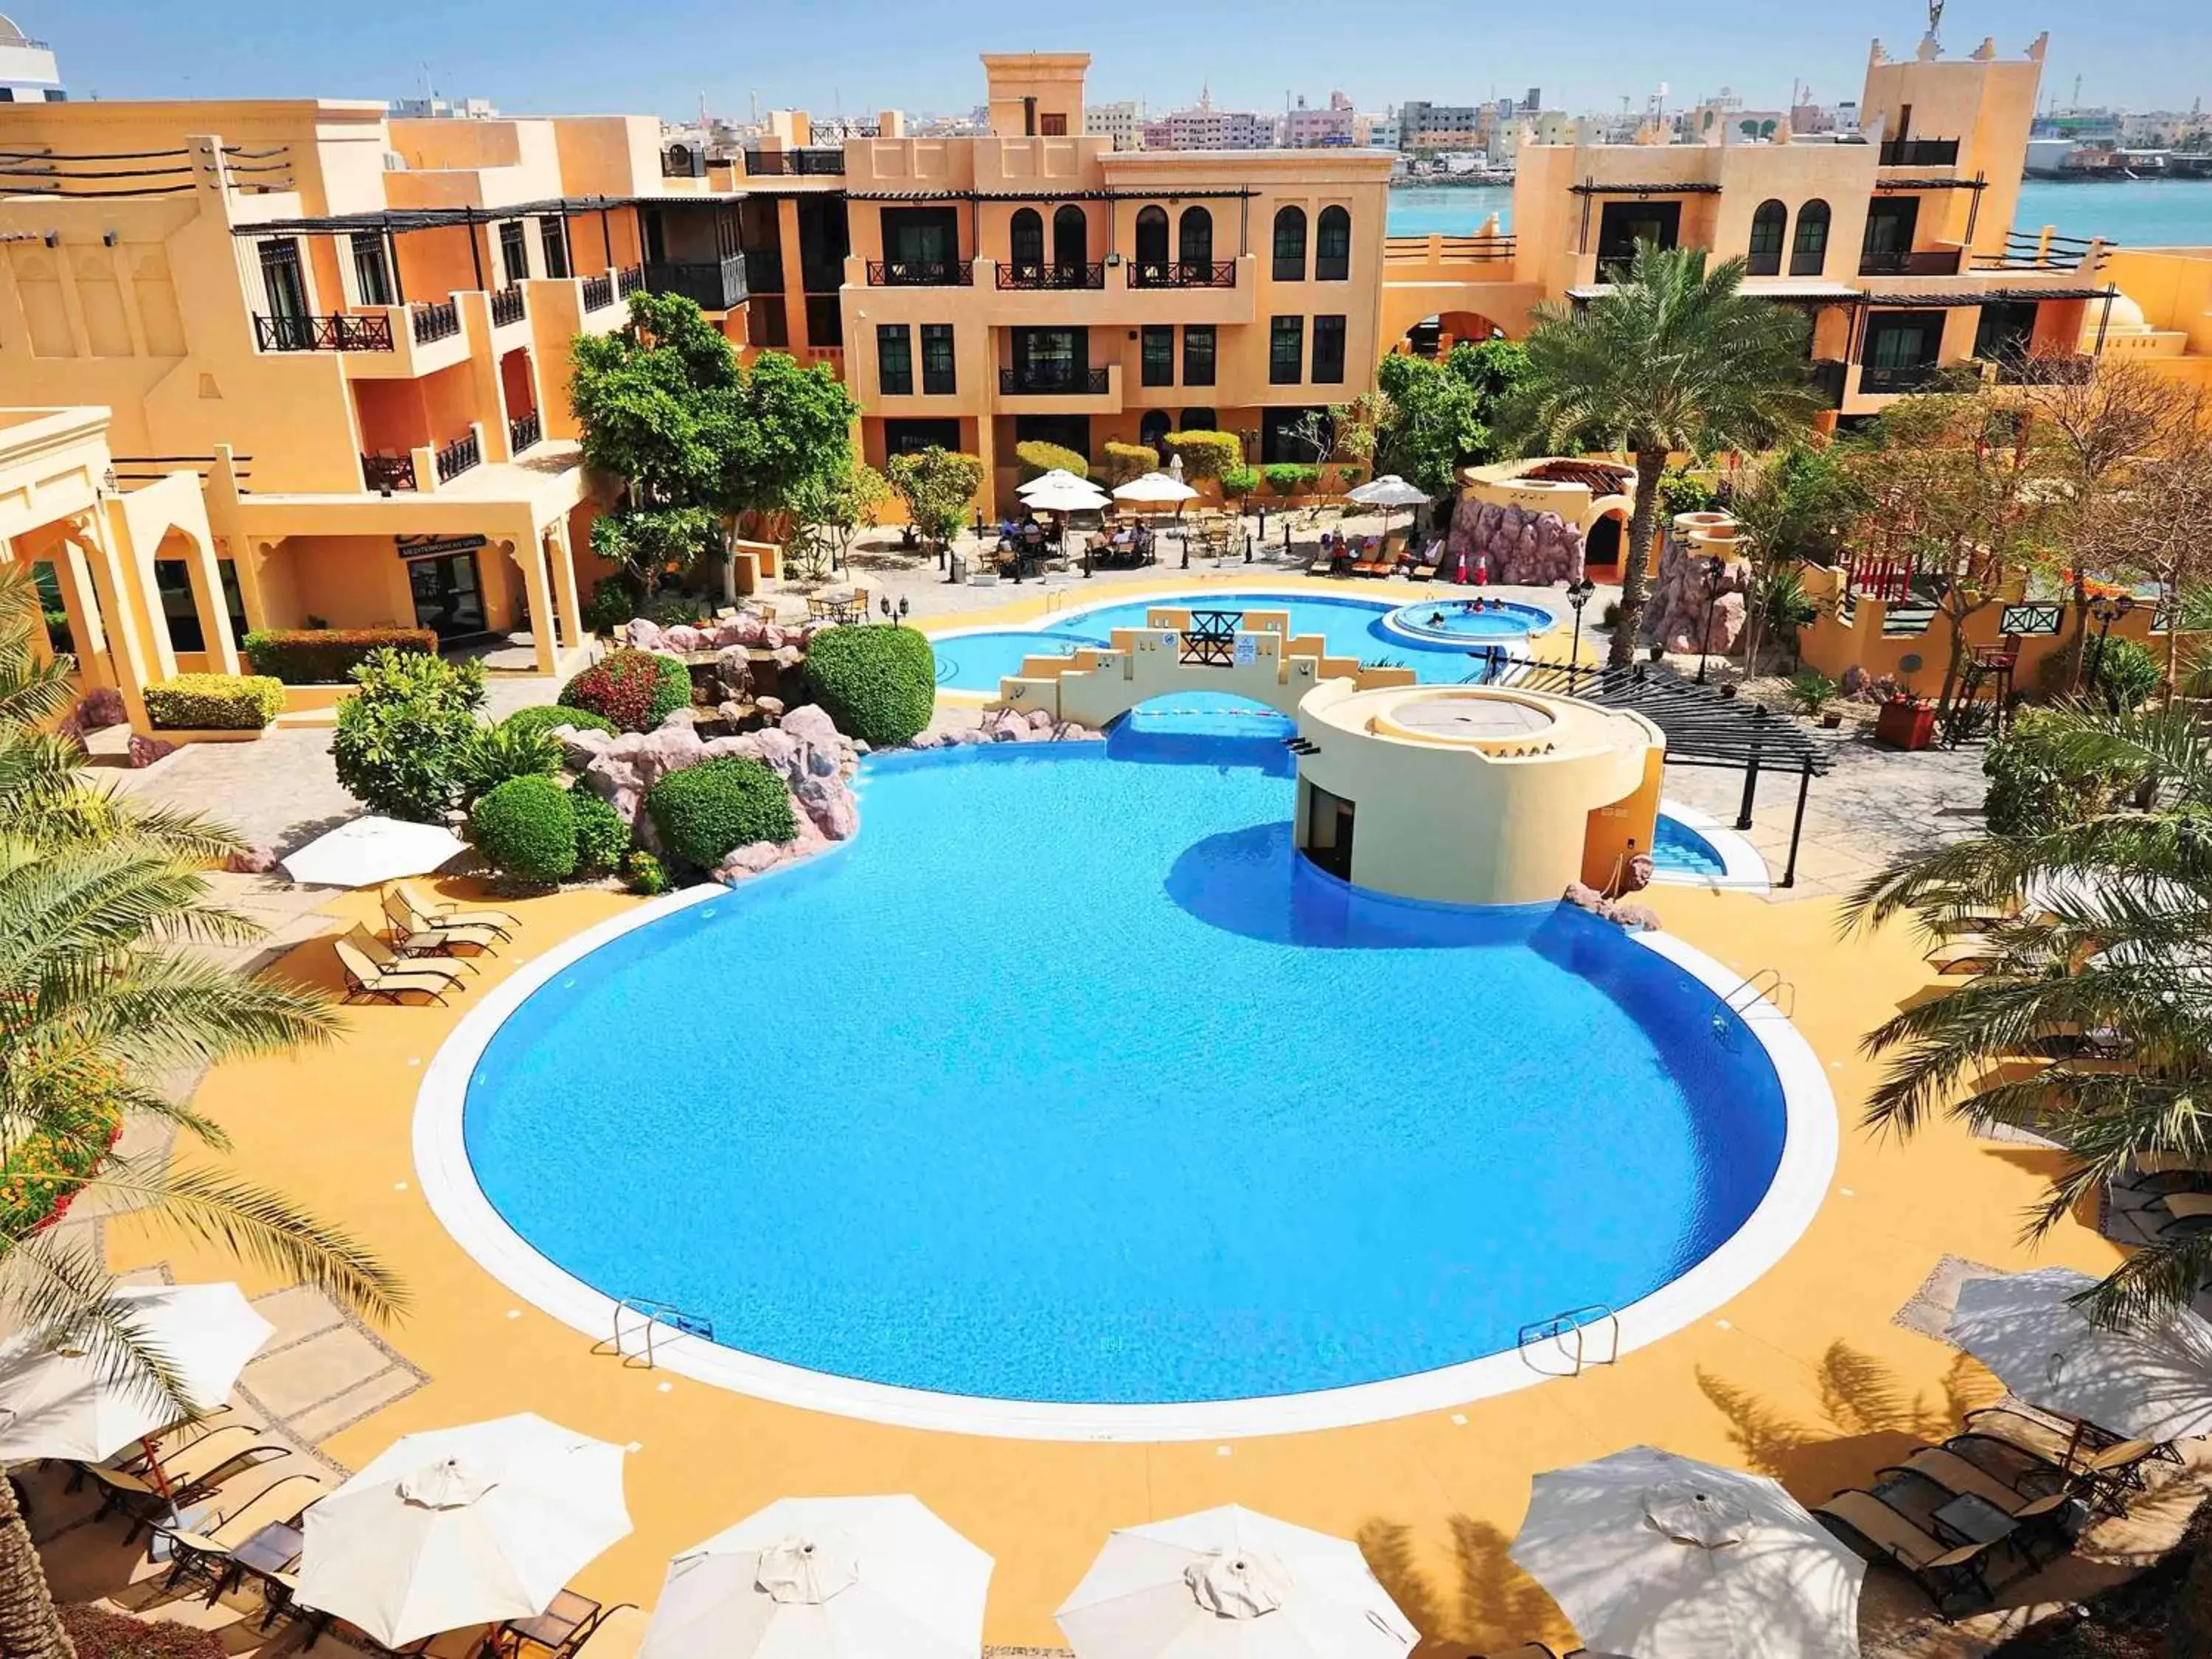 Property building, Pool View in Novotel Bahrain Al Dana Resort